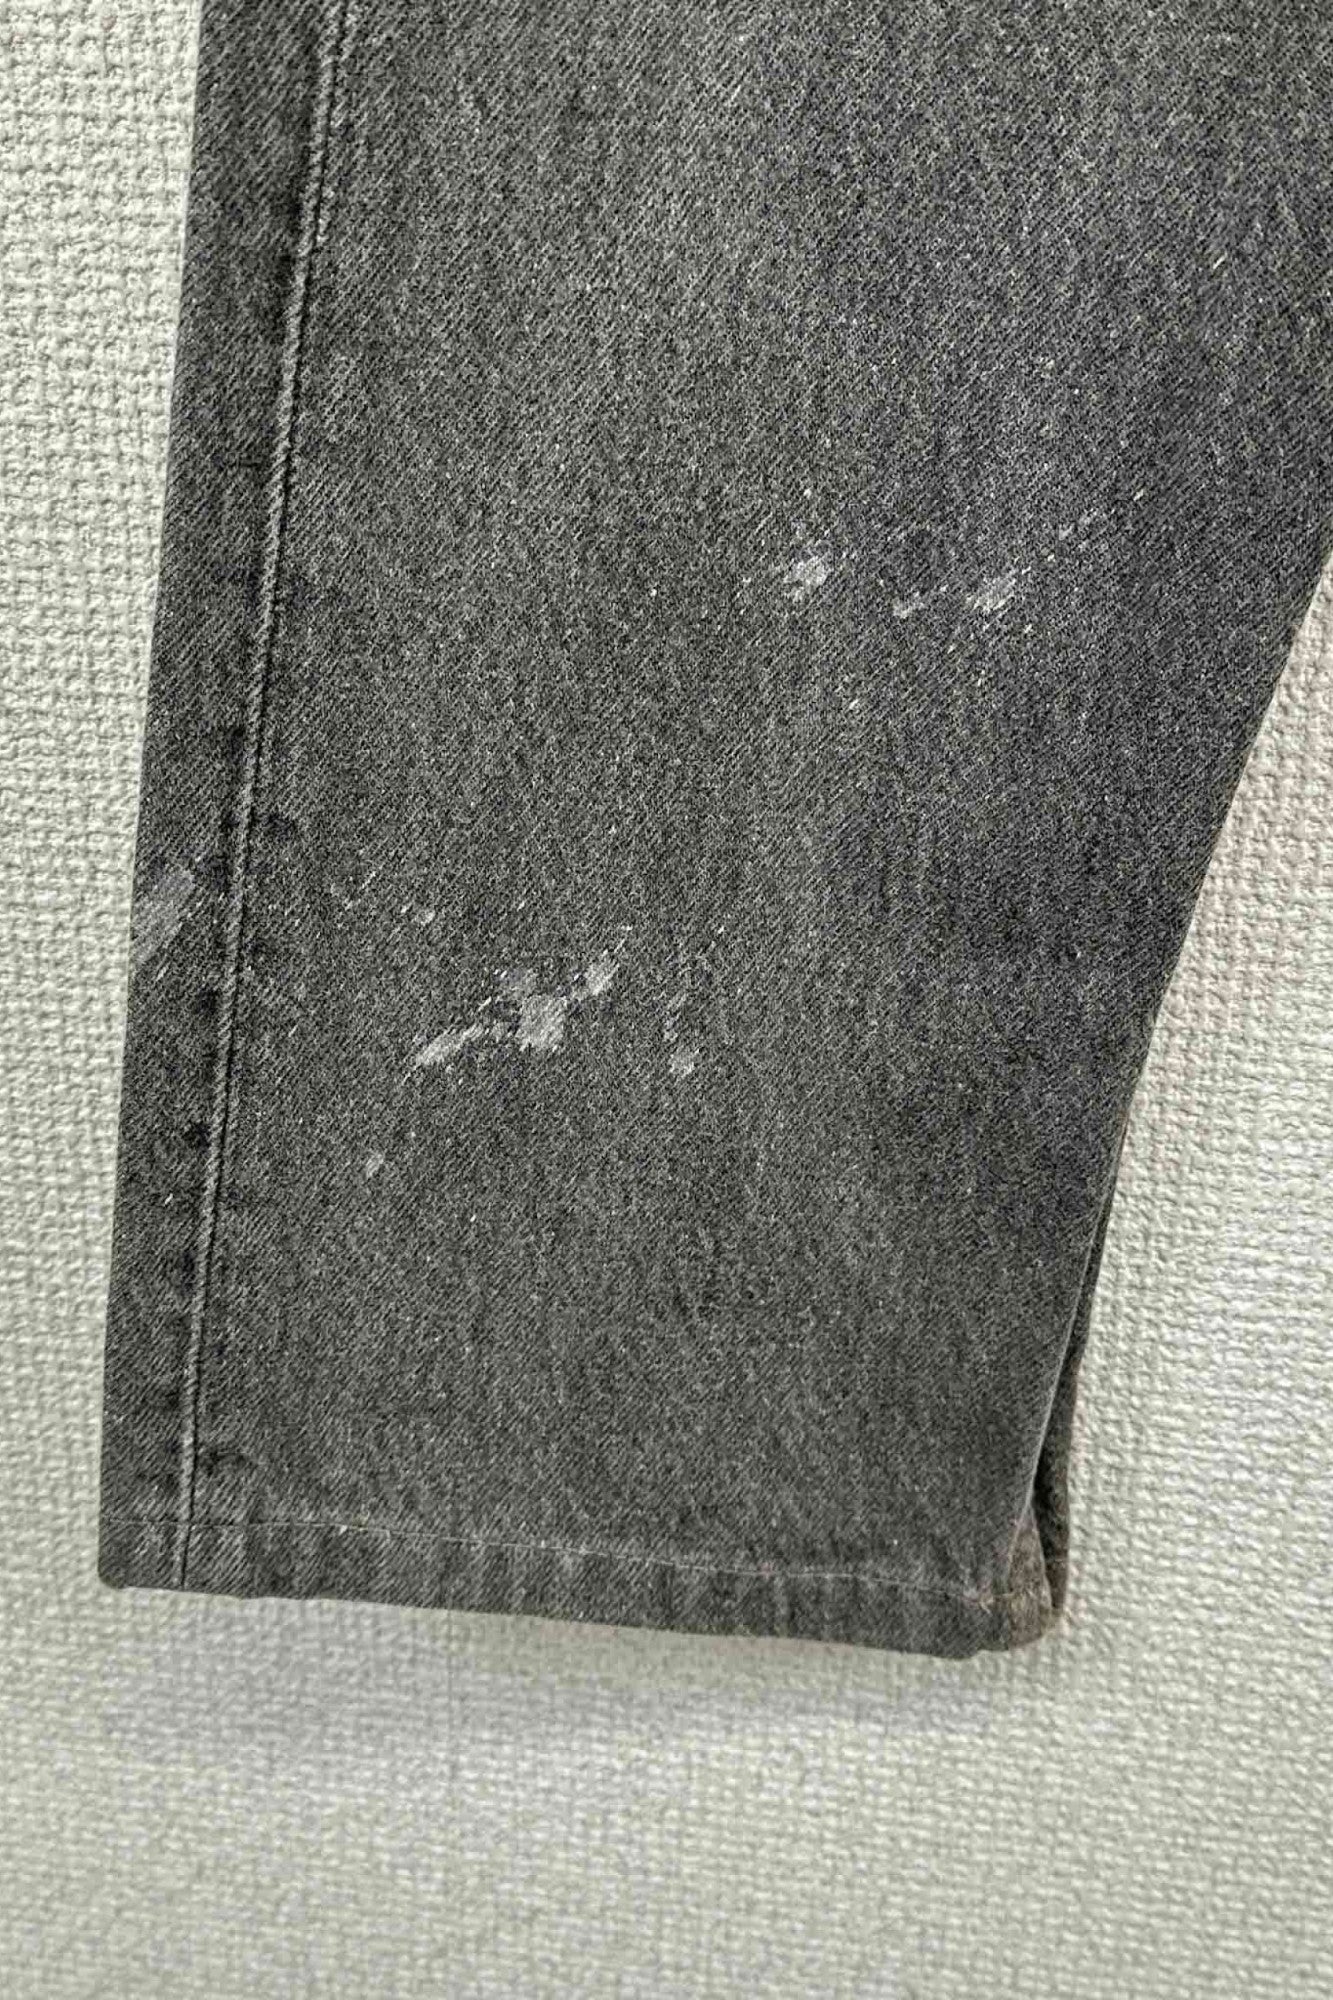 90 年代美国制造 Levi's 501 灰色牛仔裤